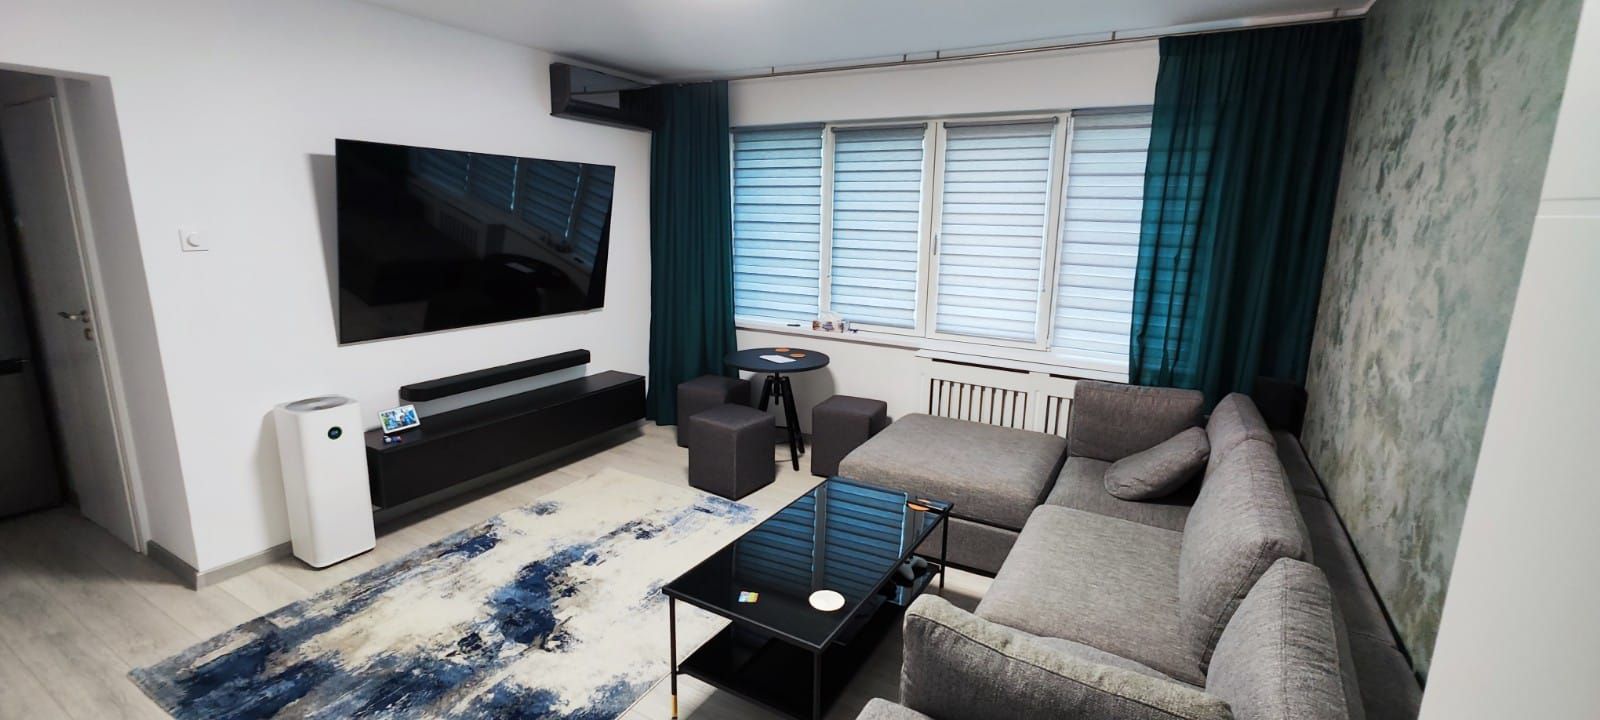 apartament smart home cu 3 camere pe bd. ion mihalache Bucuresti